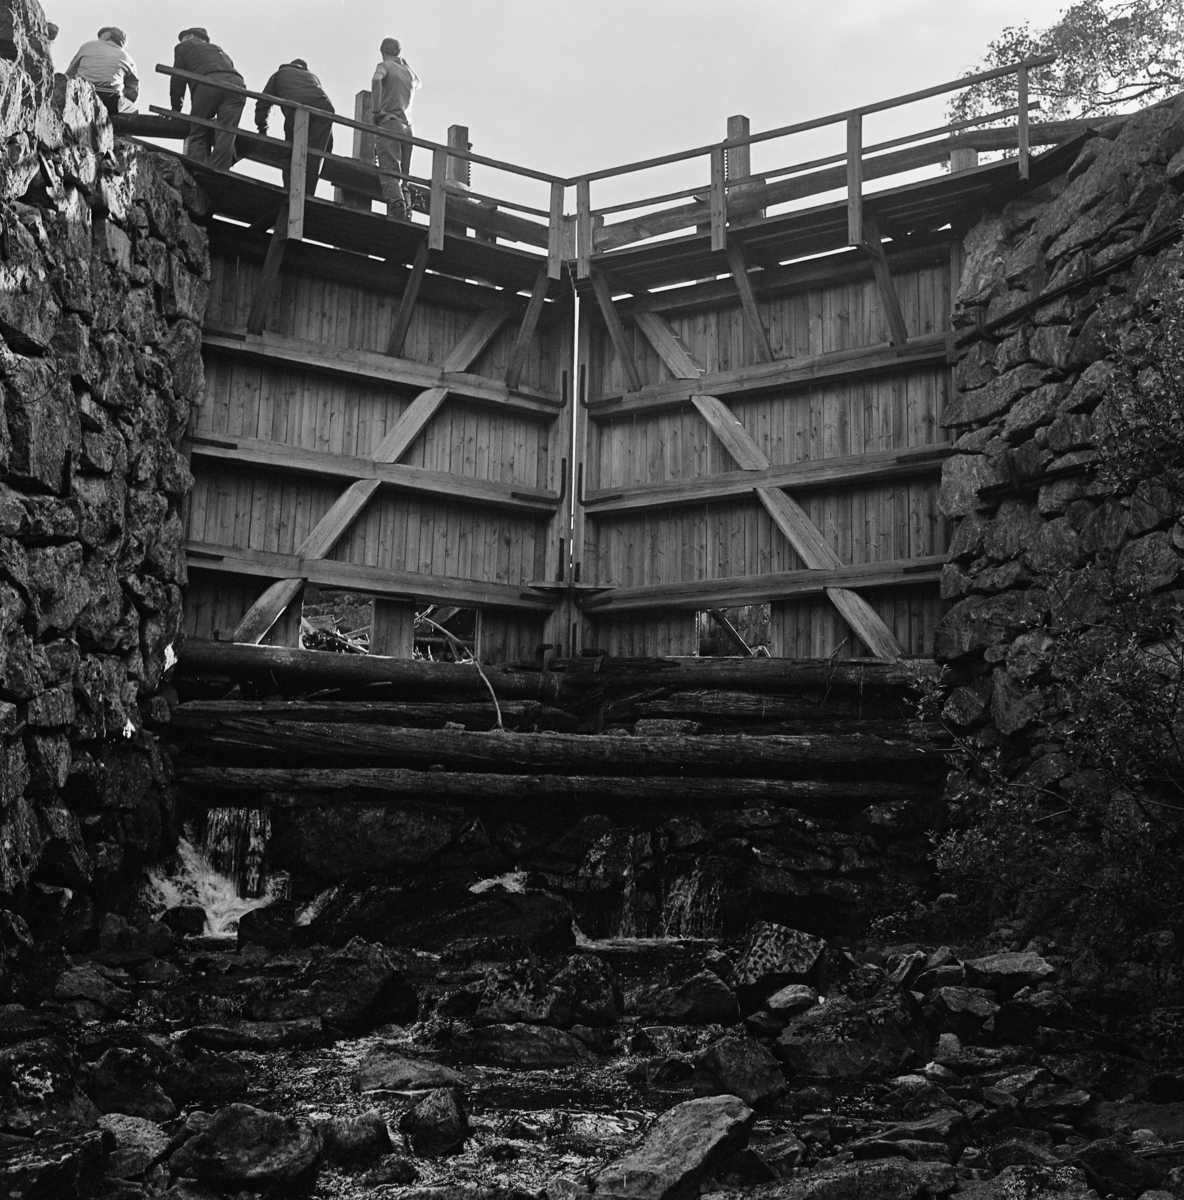 Sluseport i Grasmokanalen eller Sootkanalen i Eidskog, fotografert under ei befaring i 1978.  Fotografiet er tatt fri sjølve elveløpet, i motstrøms retning, altså opp mot porten.  Vassdraget ble kanalisert i slutten av 1840-åra, ble brukt til tømmertransport fram til begynnelsen av 1930-åra.  Det er vel grunn til å tro at den sluseporten som vises her er en seinere rekonstruksjon, lagd for å kunne formidle kanalen som kulturminne.  Noen av sluseportene ble skiftet ut med kopier av de opprinnelige i 1954, og dette kan være en av disse.  Terskelstokkene (nederst i forgrunnen) er sannsynligvis eldre.  Sluseportene er montert mot kraftige murte vanger av naturstein som er samlet i nærområdet.  Sluseportene er såpass brede at de møter hverandre som en forholdsvis butt «plog» i motstrøms retning.  De har et rammeverk av 8" X 8" firskårne bjelker og var kledd med tettstilte planker på motstrøms side (mot ovenforliggende slusekammer).  Konstruksjonen er avstivet med diagonale skråbjelker og med vinkeljern. På toppen av portene er det montert gangbruer med rekkverk.  Da dette fotografiet ble tatt sto det fire mennesker på brua over venstre port.  Botnlukene i sluseportene sto åpne da fotografiet ble tatt. 

En kort orientering om Grasmokanalens eller Sootkanalens historie finnes under fanen «Andre opplysninger». 